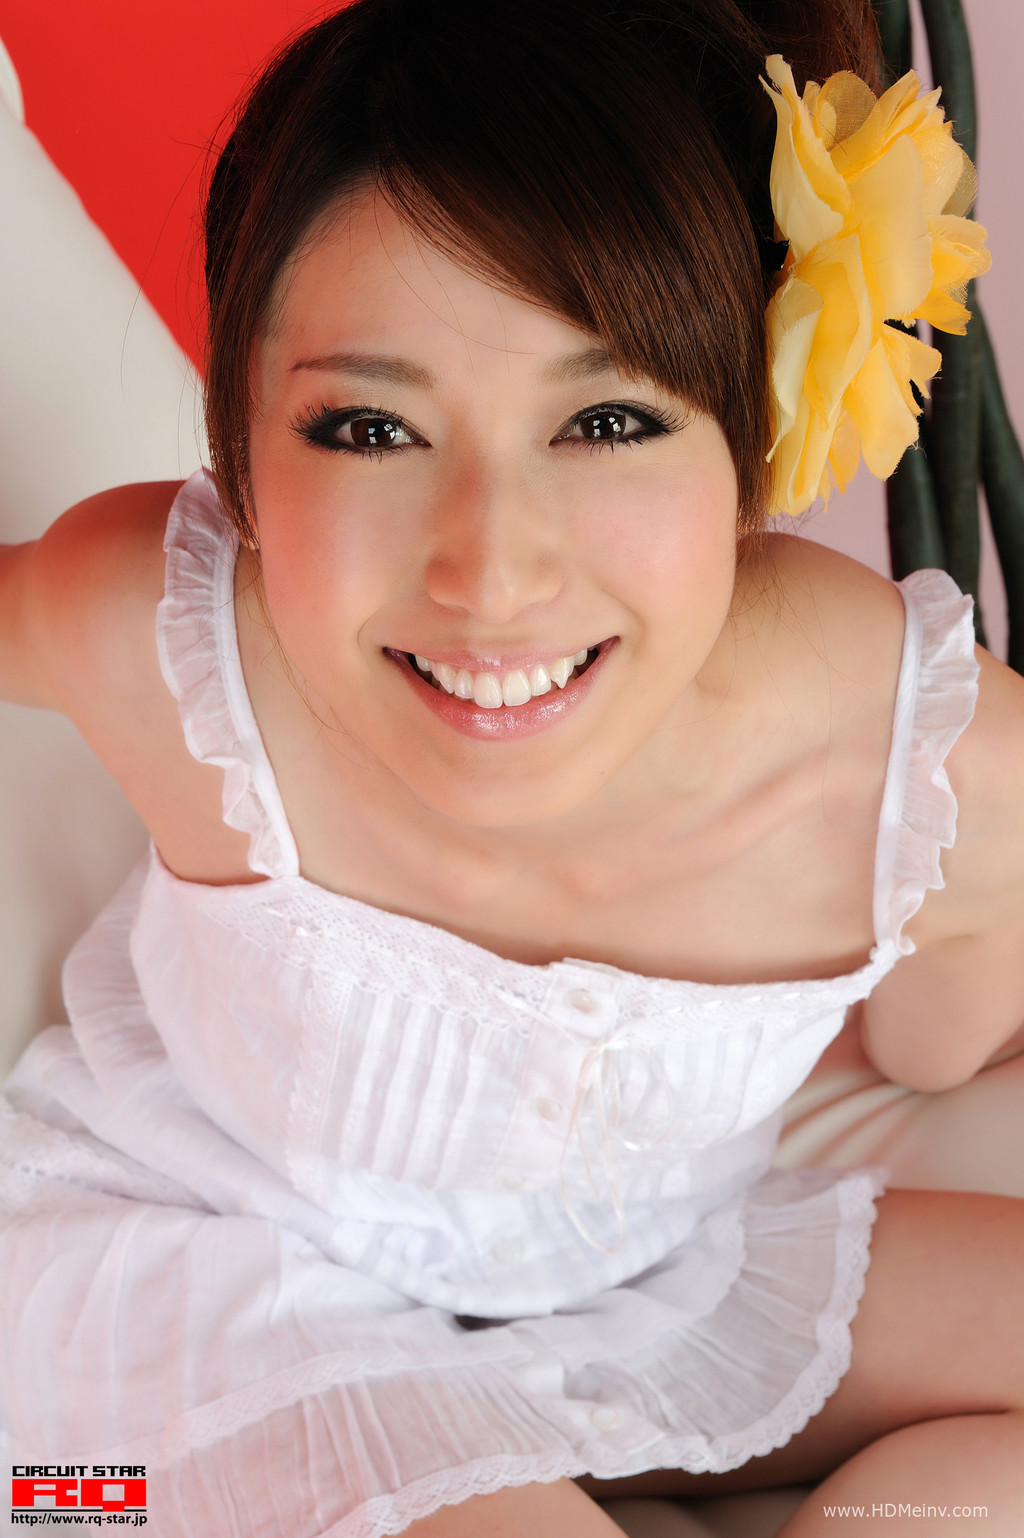 日本RQ-Star美女套图第273期 Emi Shimizu 清水恵美 Private Dress